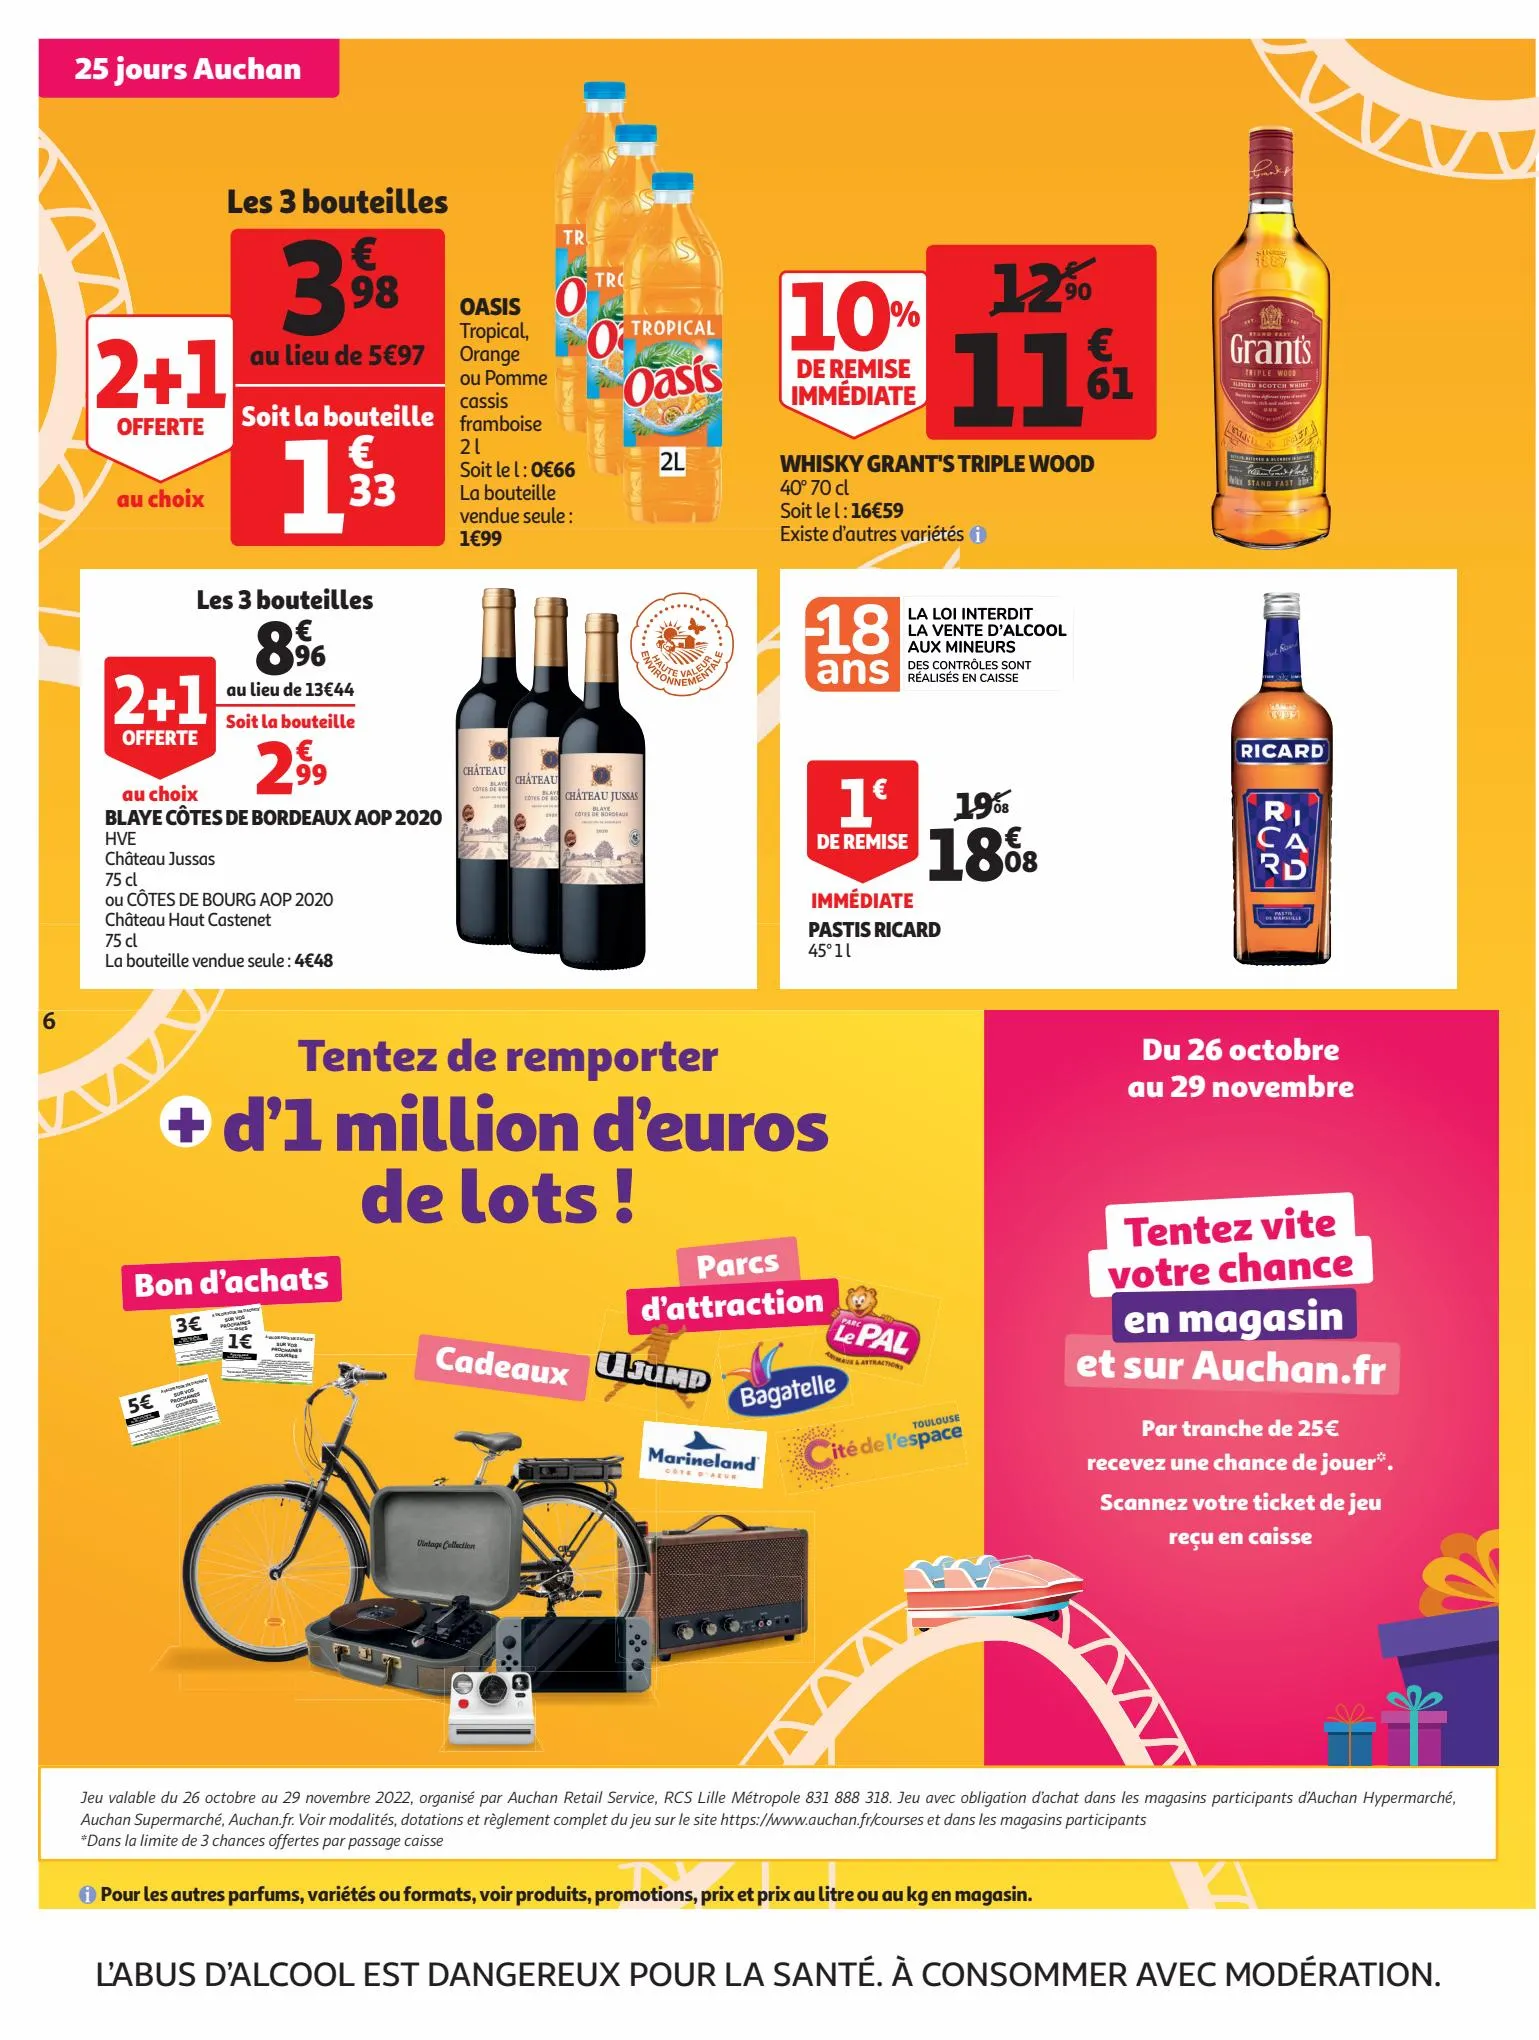 Catalogue 25 jours Auchan, page 00006